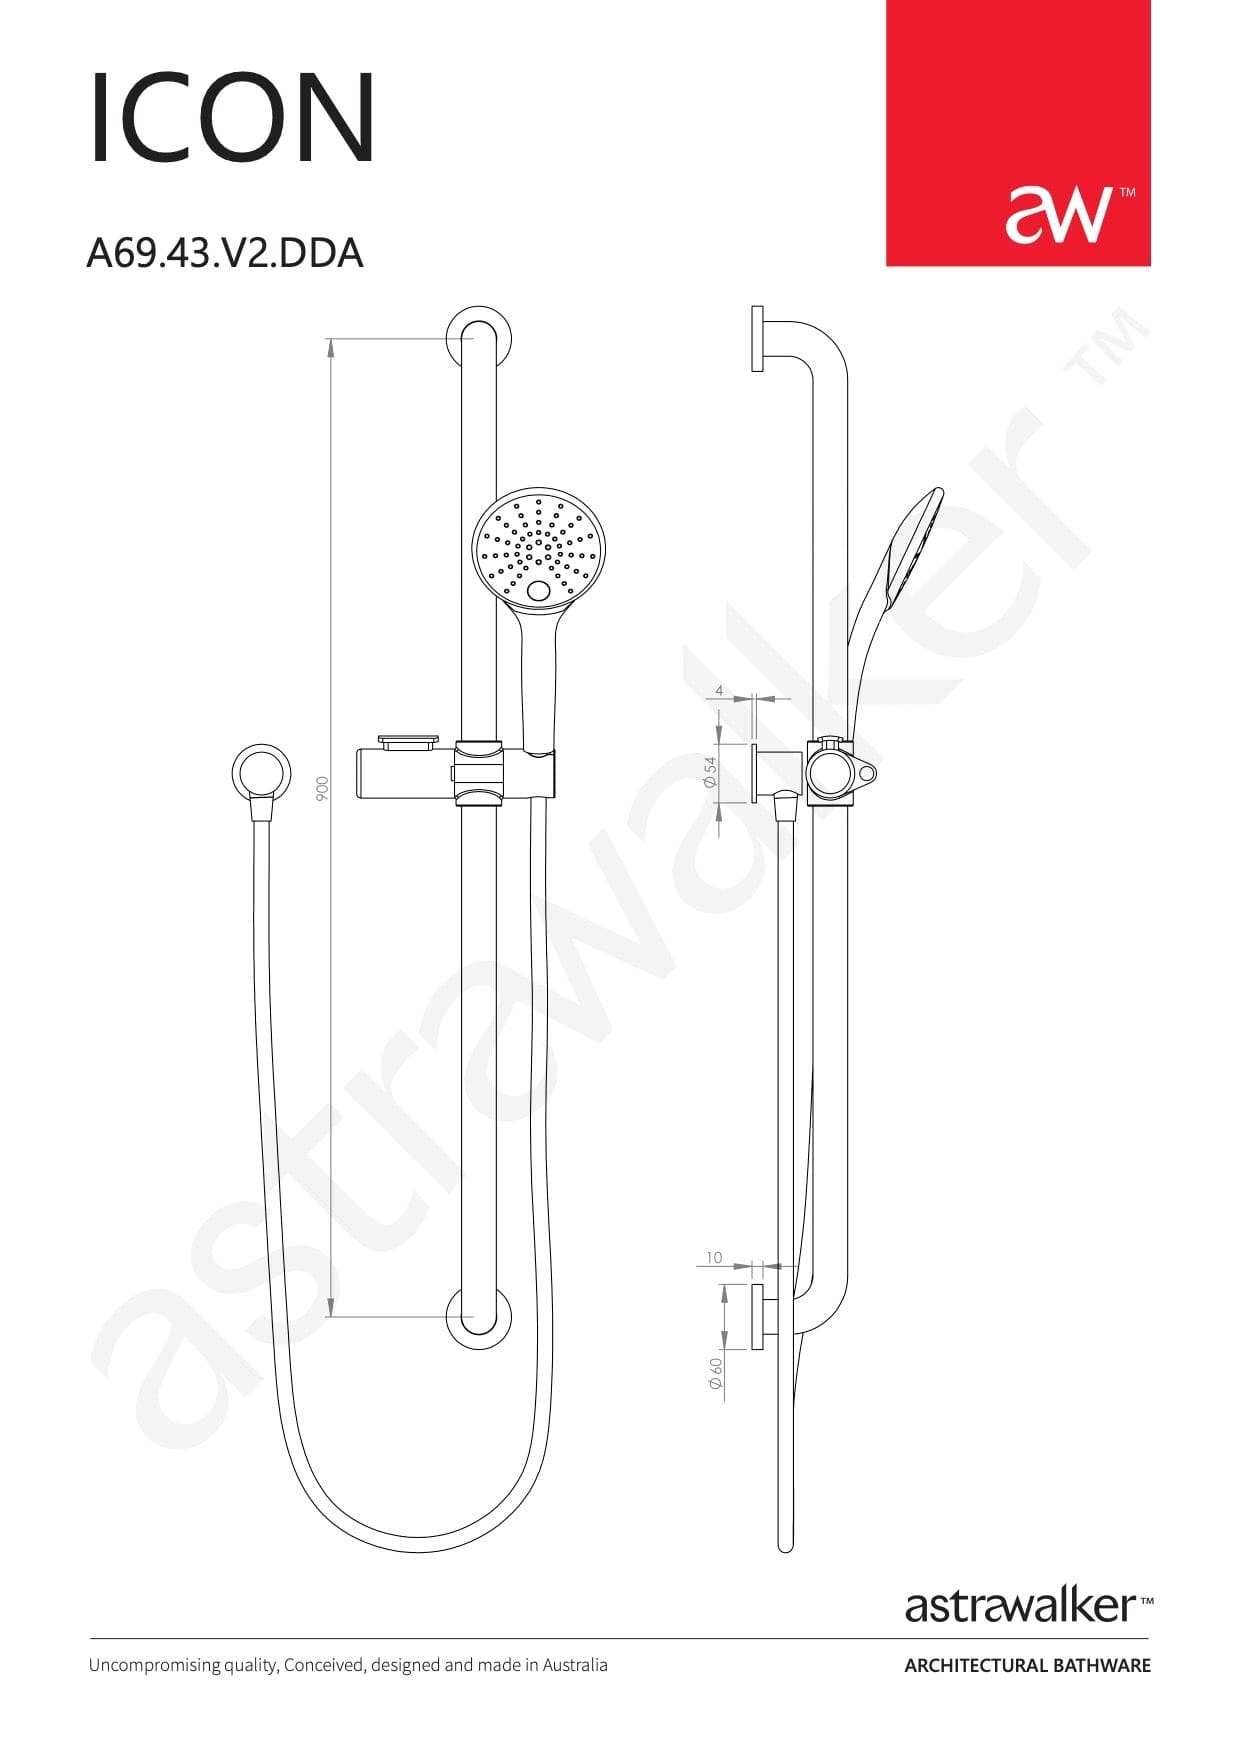 Astra Walker Shower Astra Walker Icon Multi-Function Disabled Slide Shower